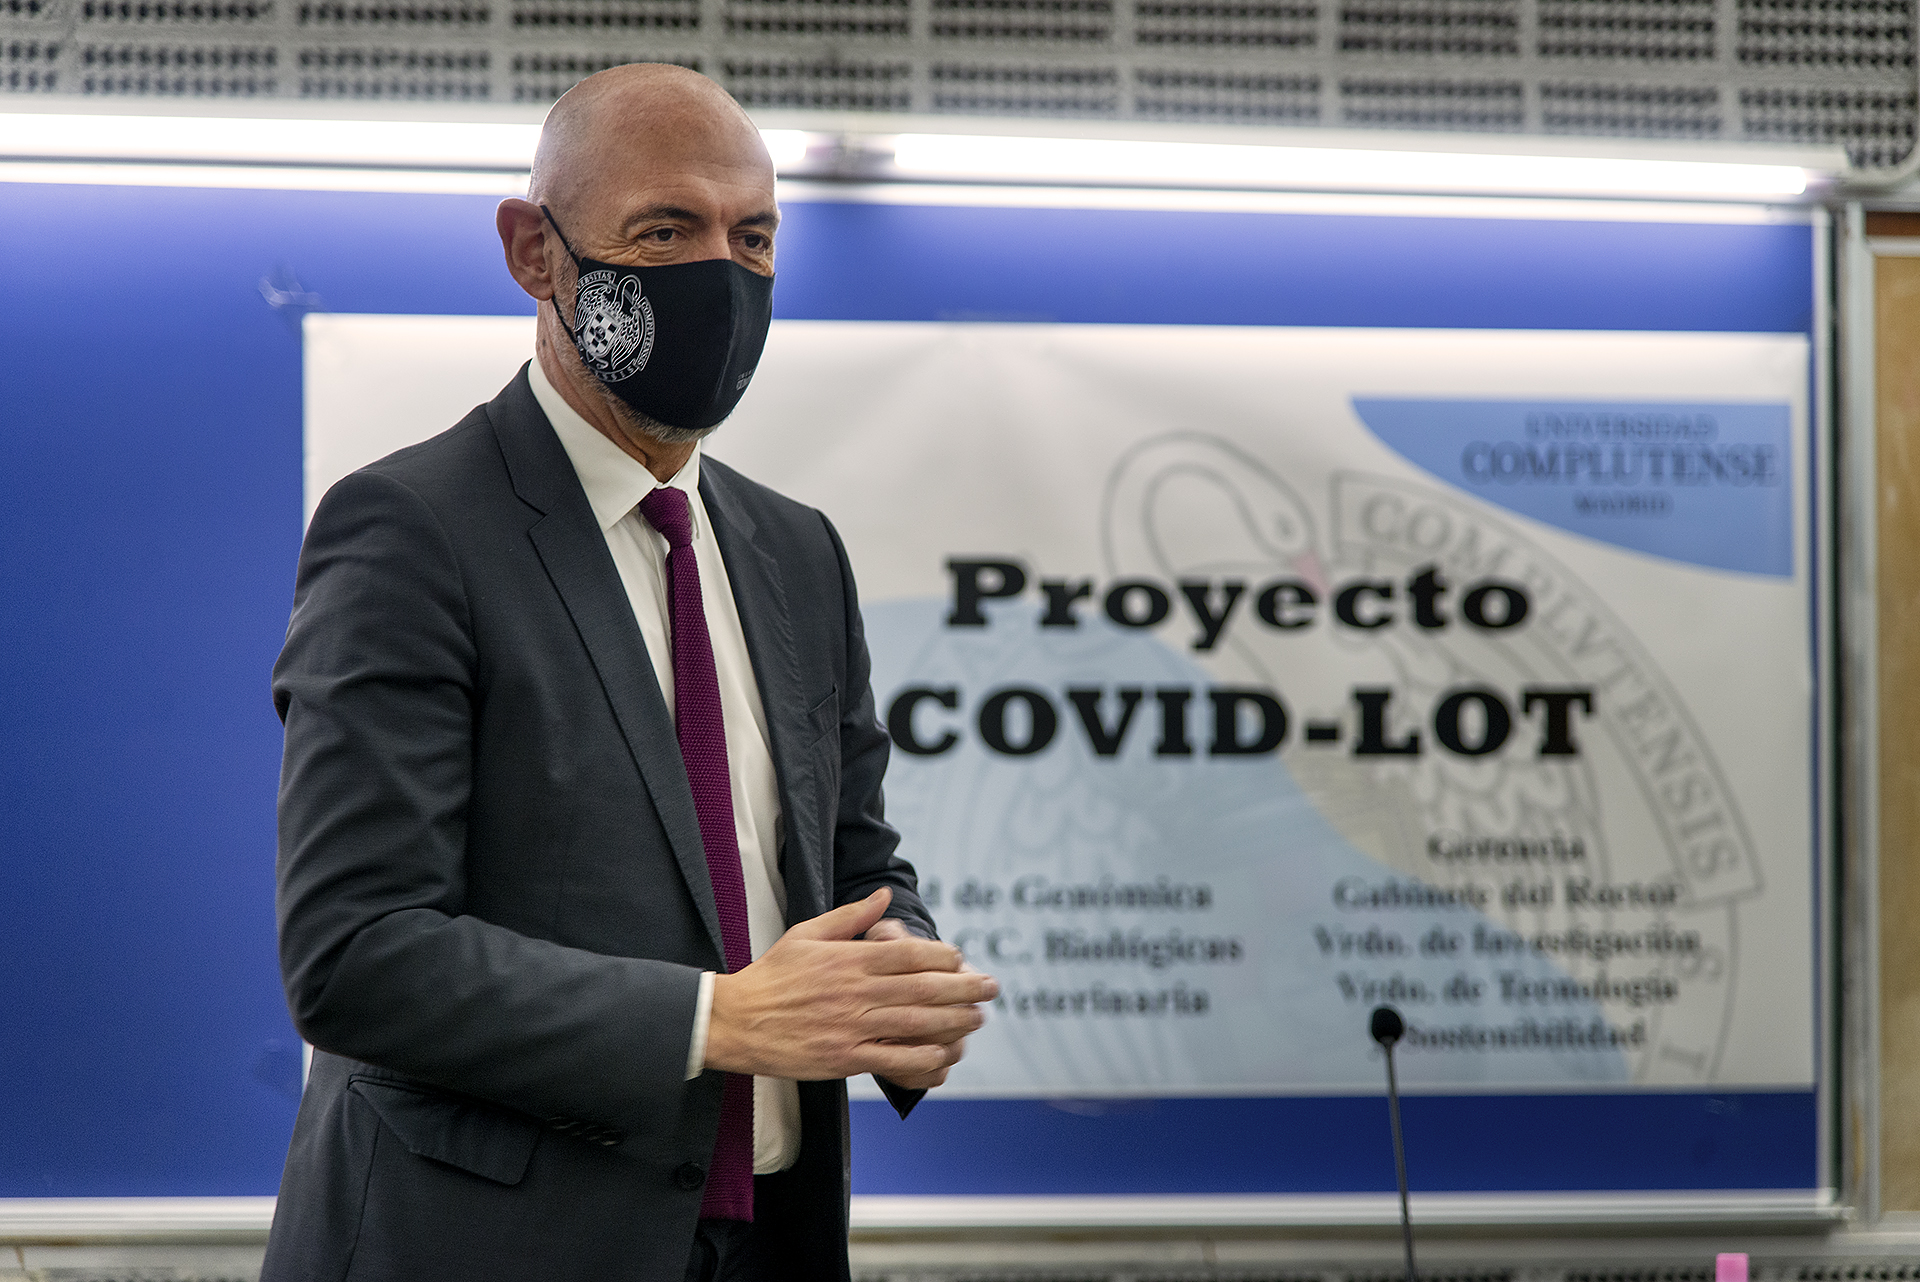 El rector de la Universidad Complutense, Joaquín Goyache, en el acto de presentación del proyecto COVID-LOT